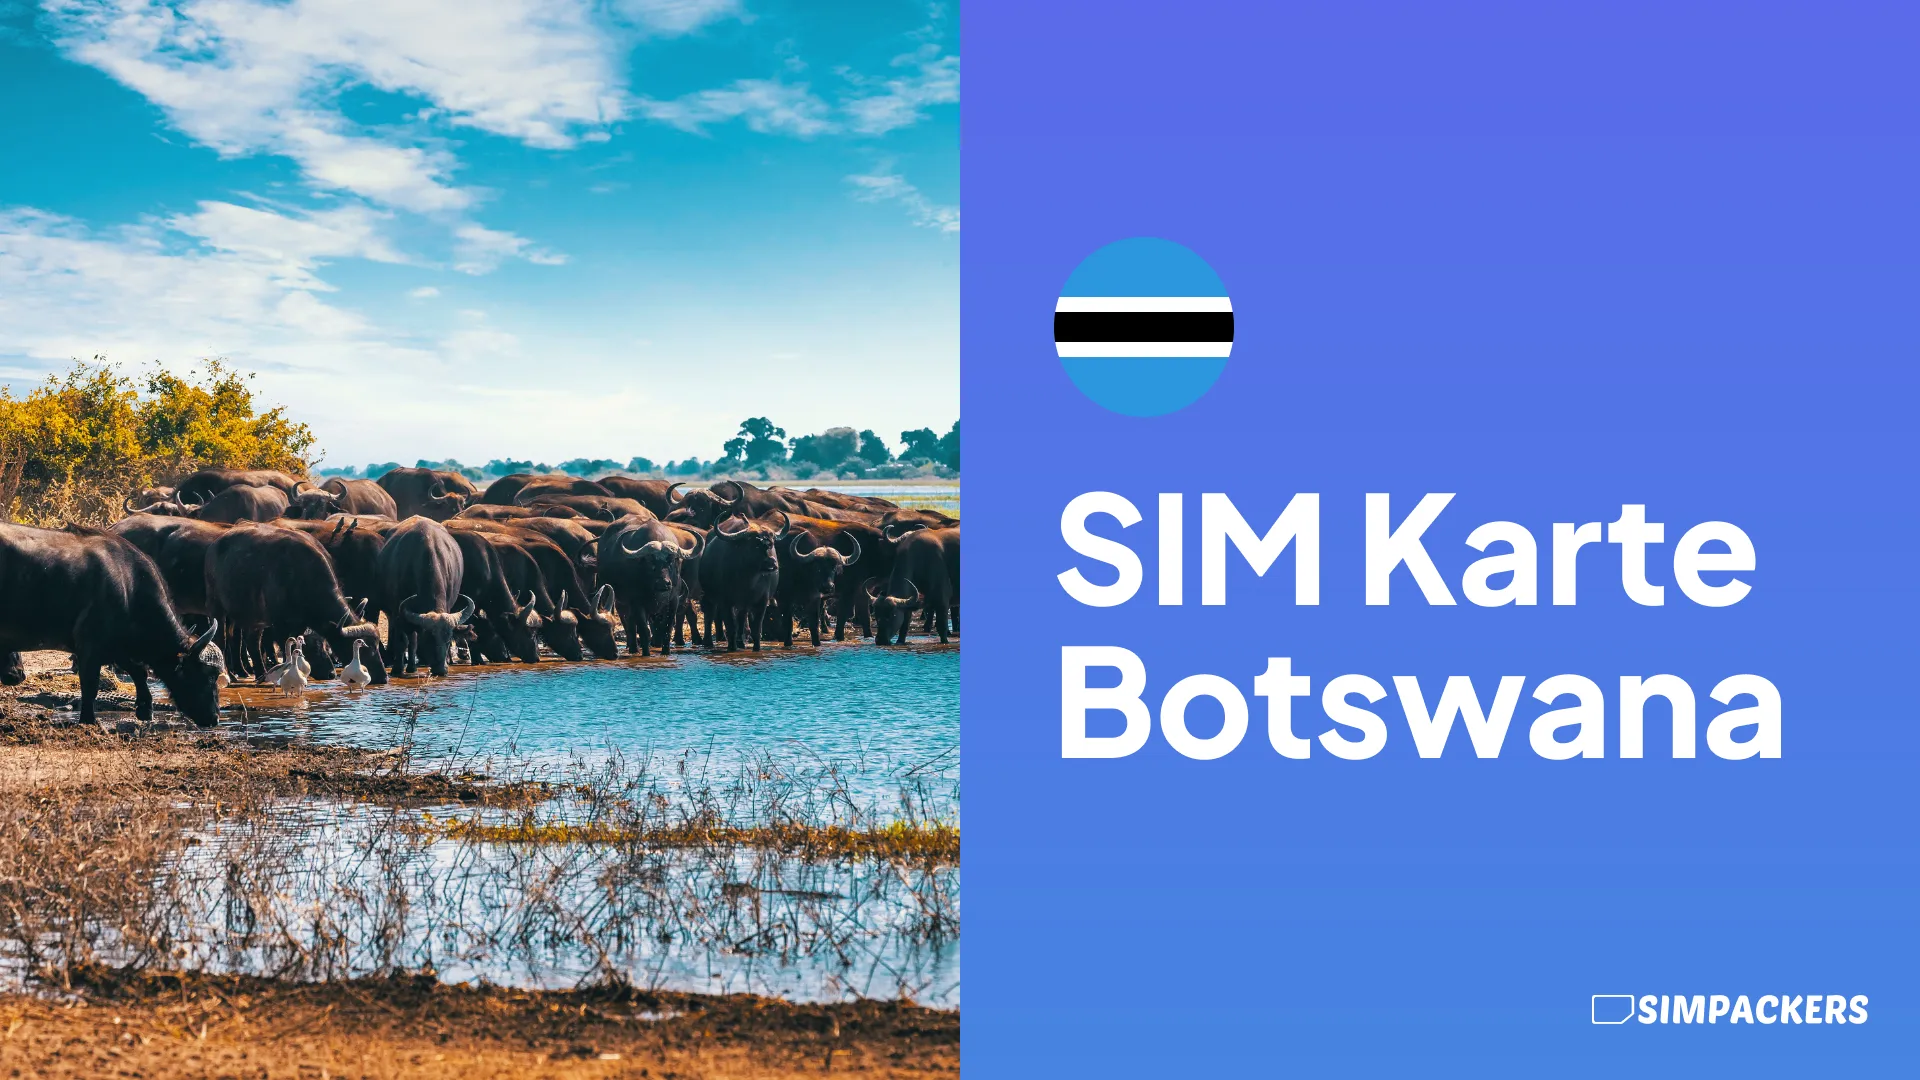 DE/FEATURED_IMAGES/sim-karte-botswana.webp